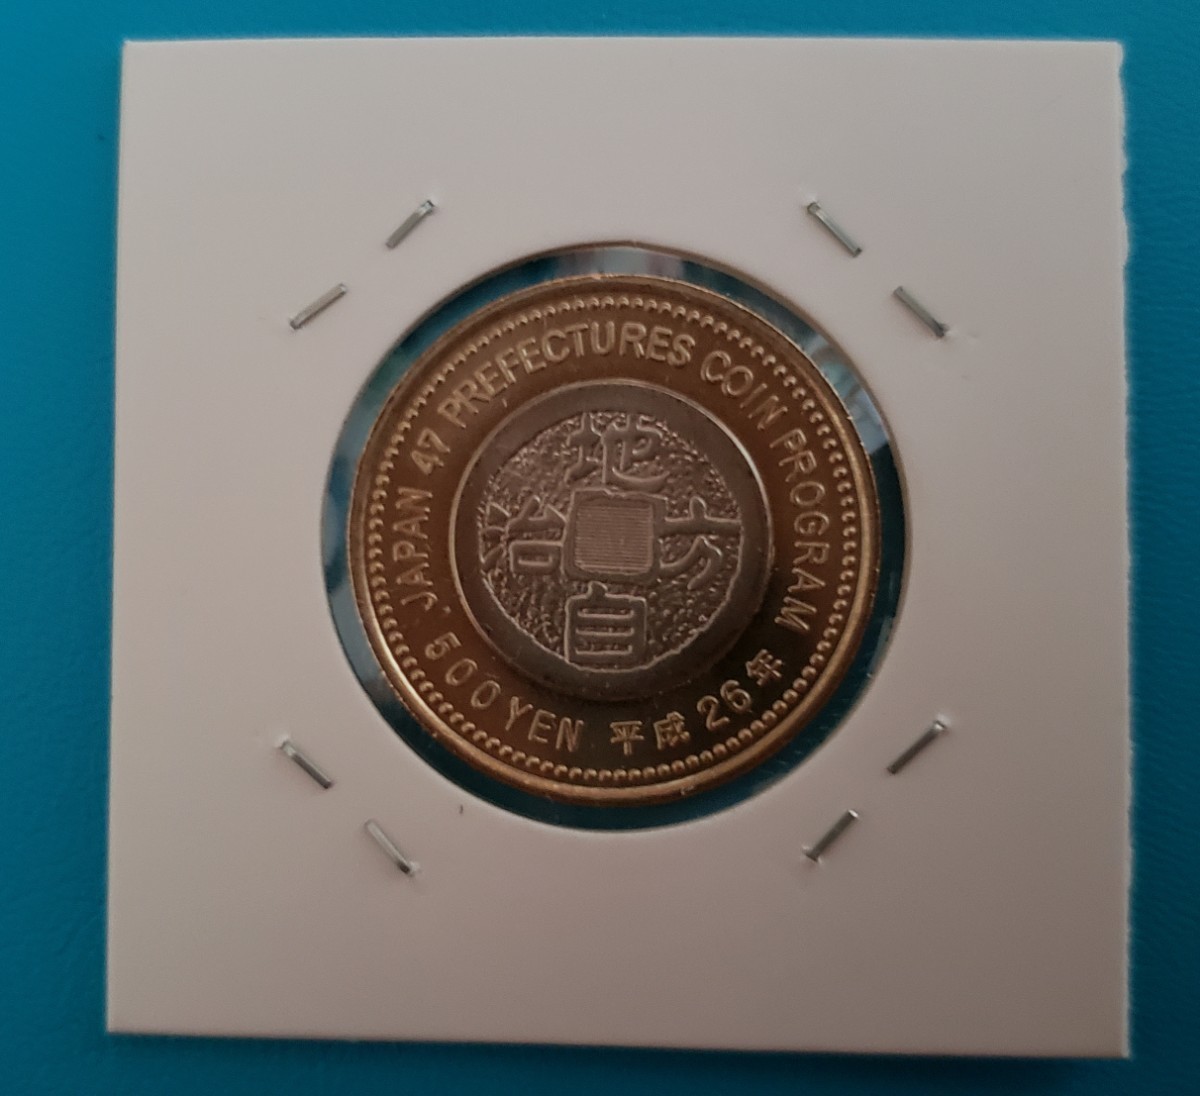 地方自治施行50周年記念 石川県       500円バイカラークラッド貨幣 控え記号:V20 の画像2